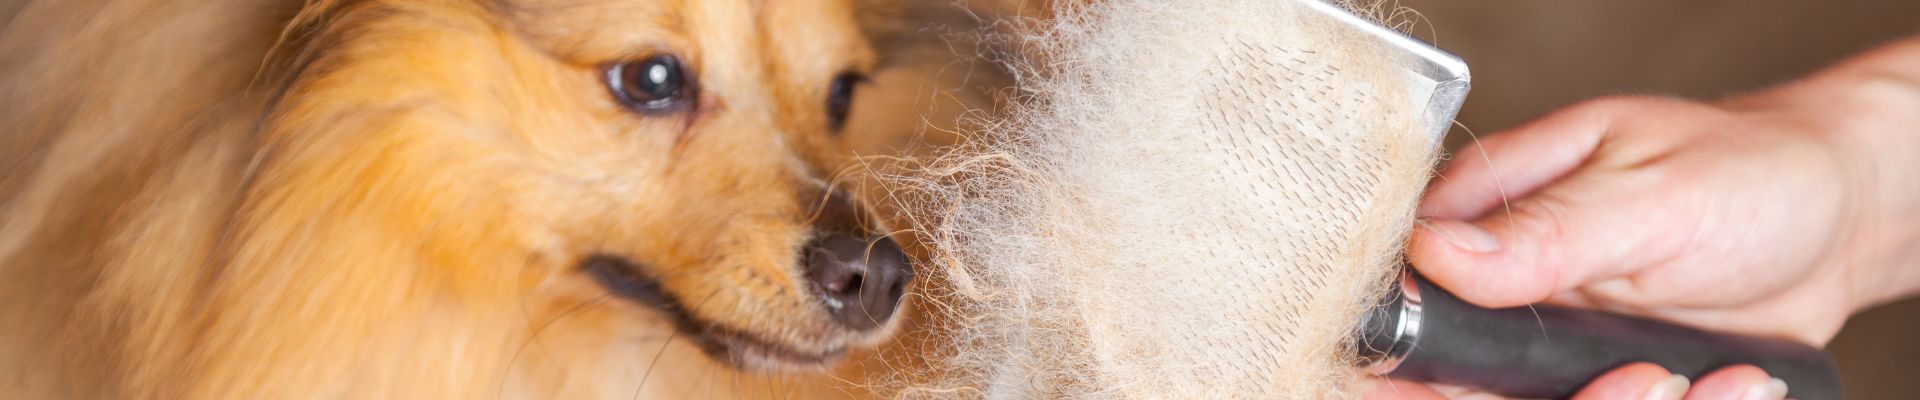 Un perro peludo junto a un cepillo cubierto de pelo de perro